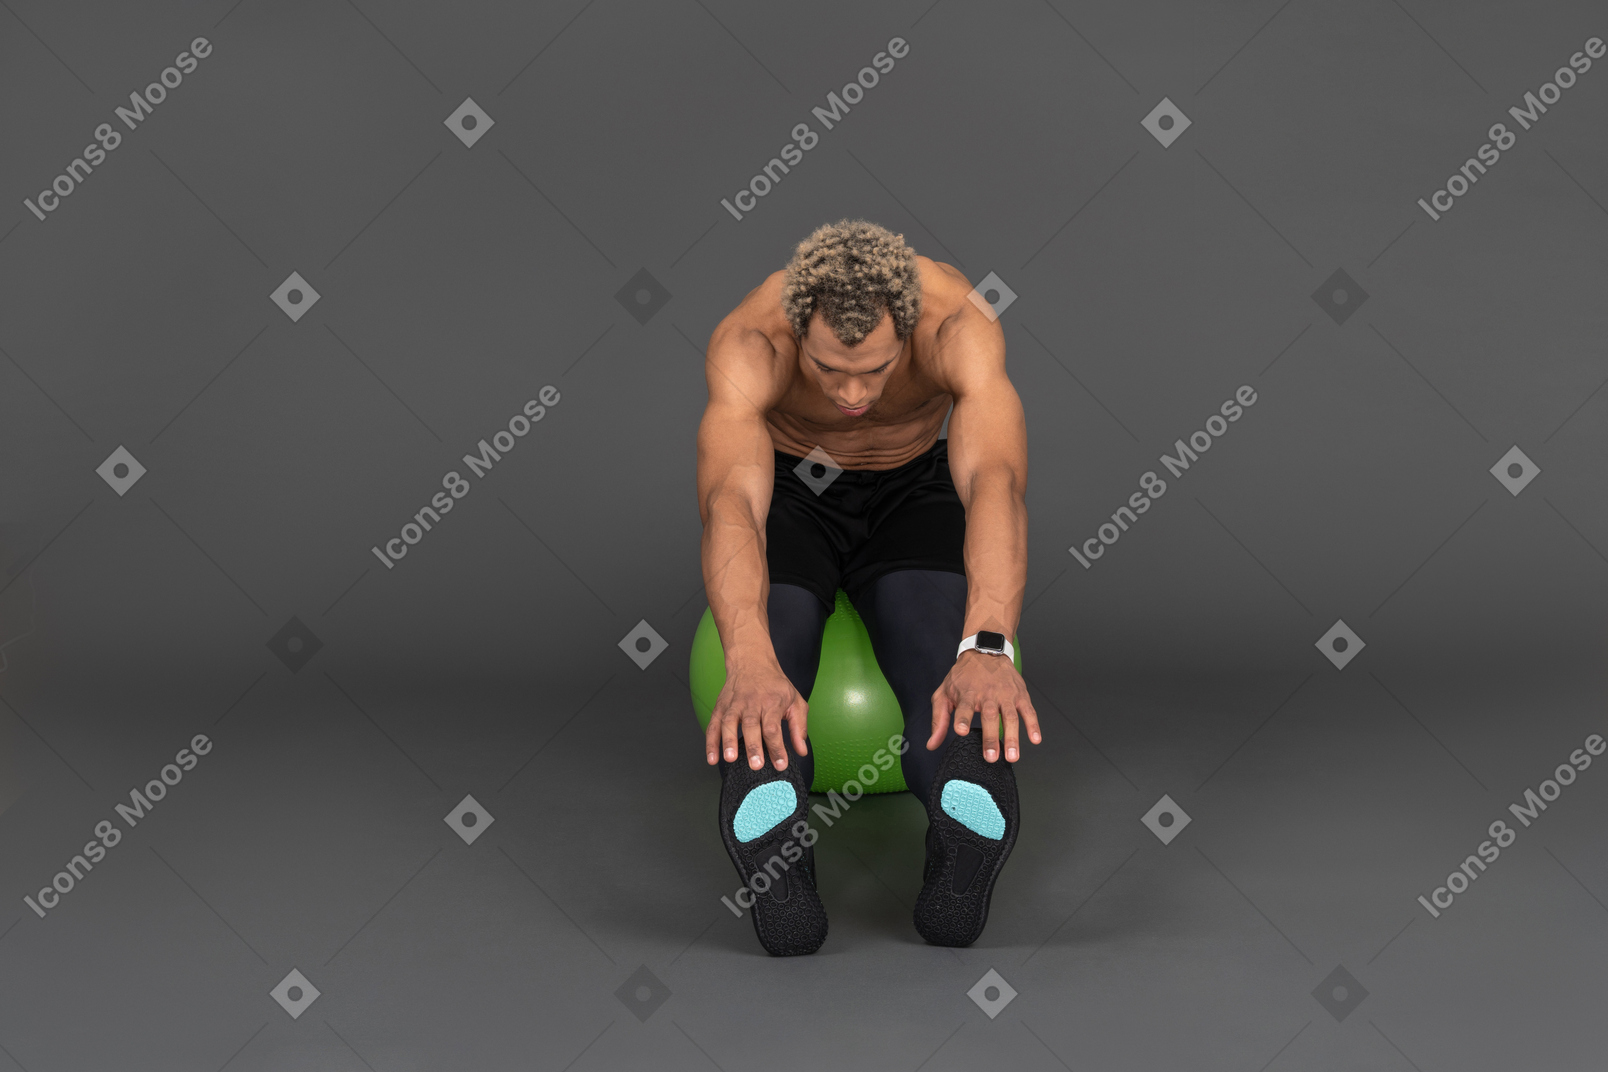 Vue de face d'un homme afro torse nu s'étirant assis sur un ballon de gymnastique vert